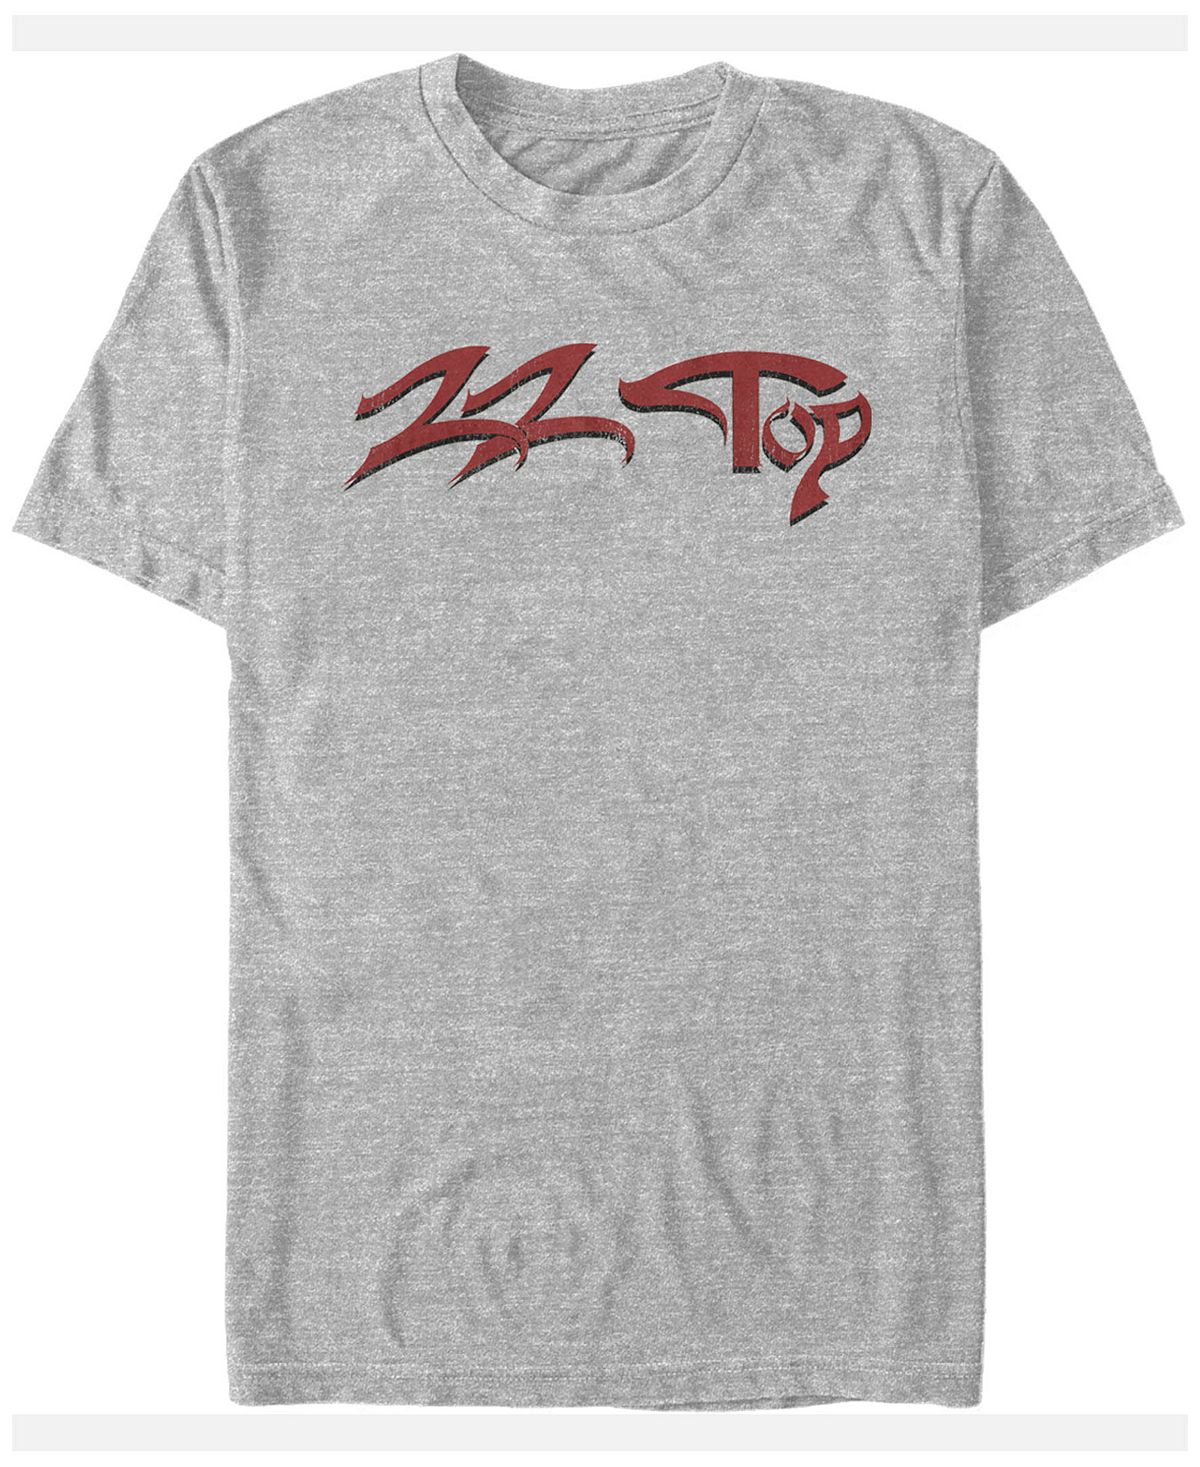 Мужская футболка с текстовым логотипом и коротким рукавом Fifth Sun, серый zz top zz top eliminator